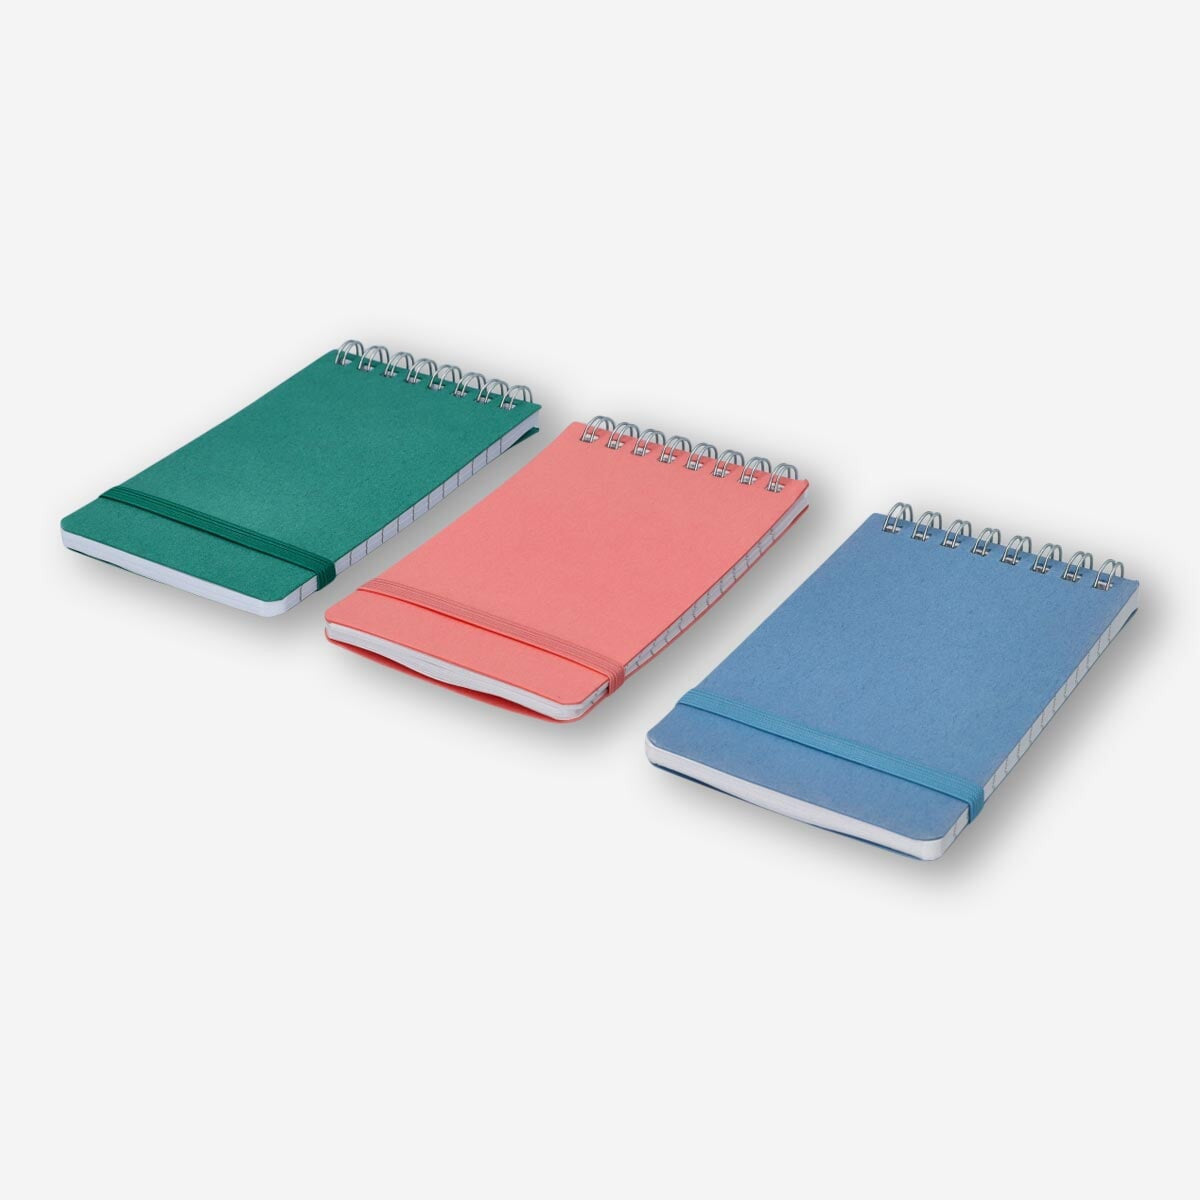 NotePads